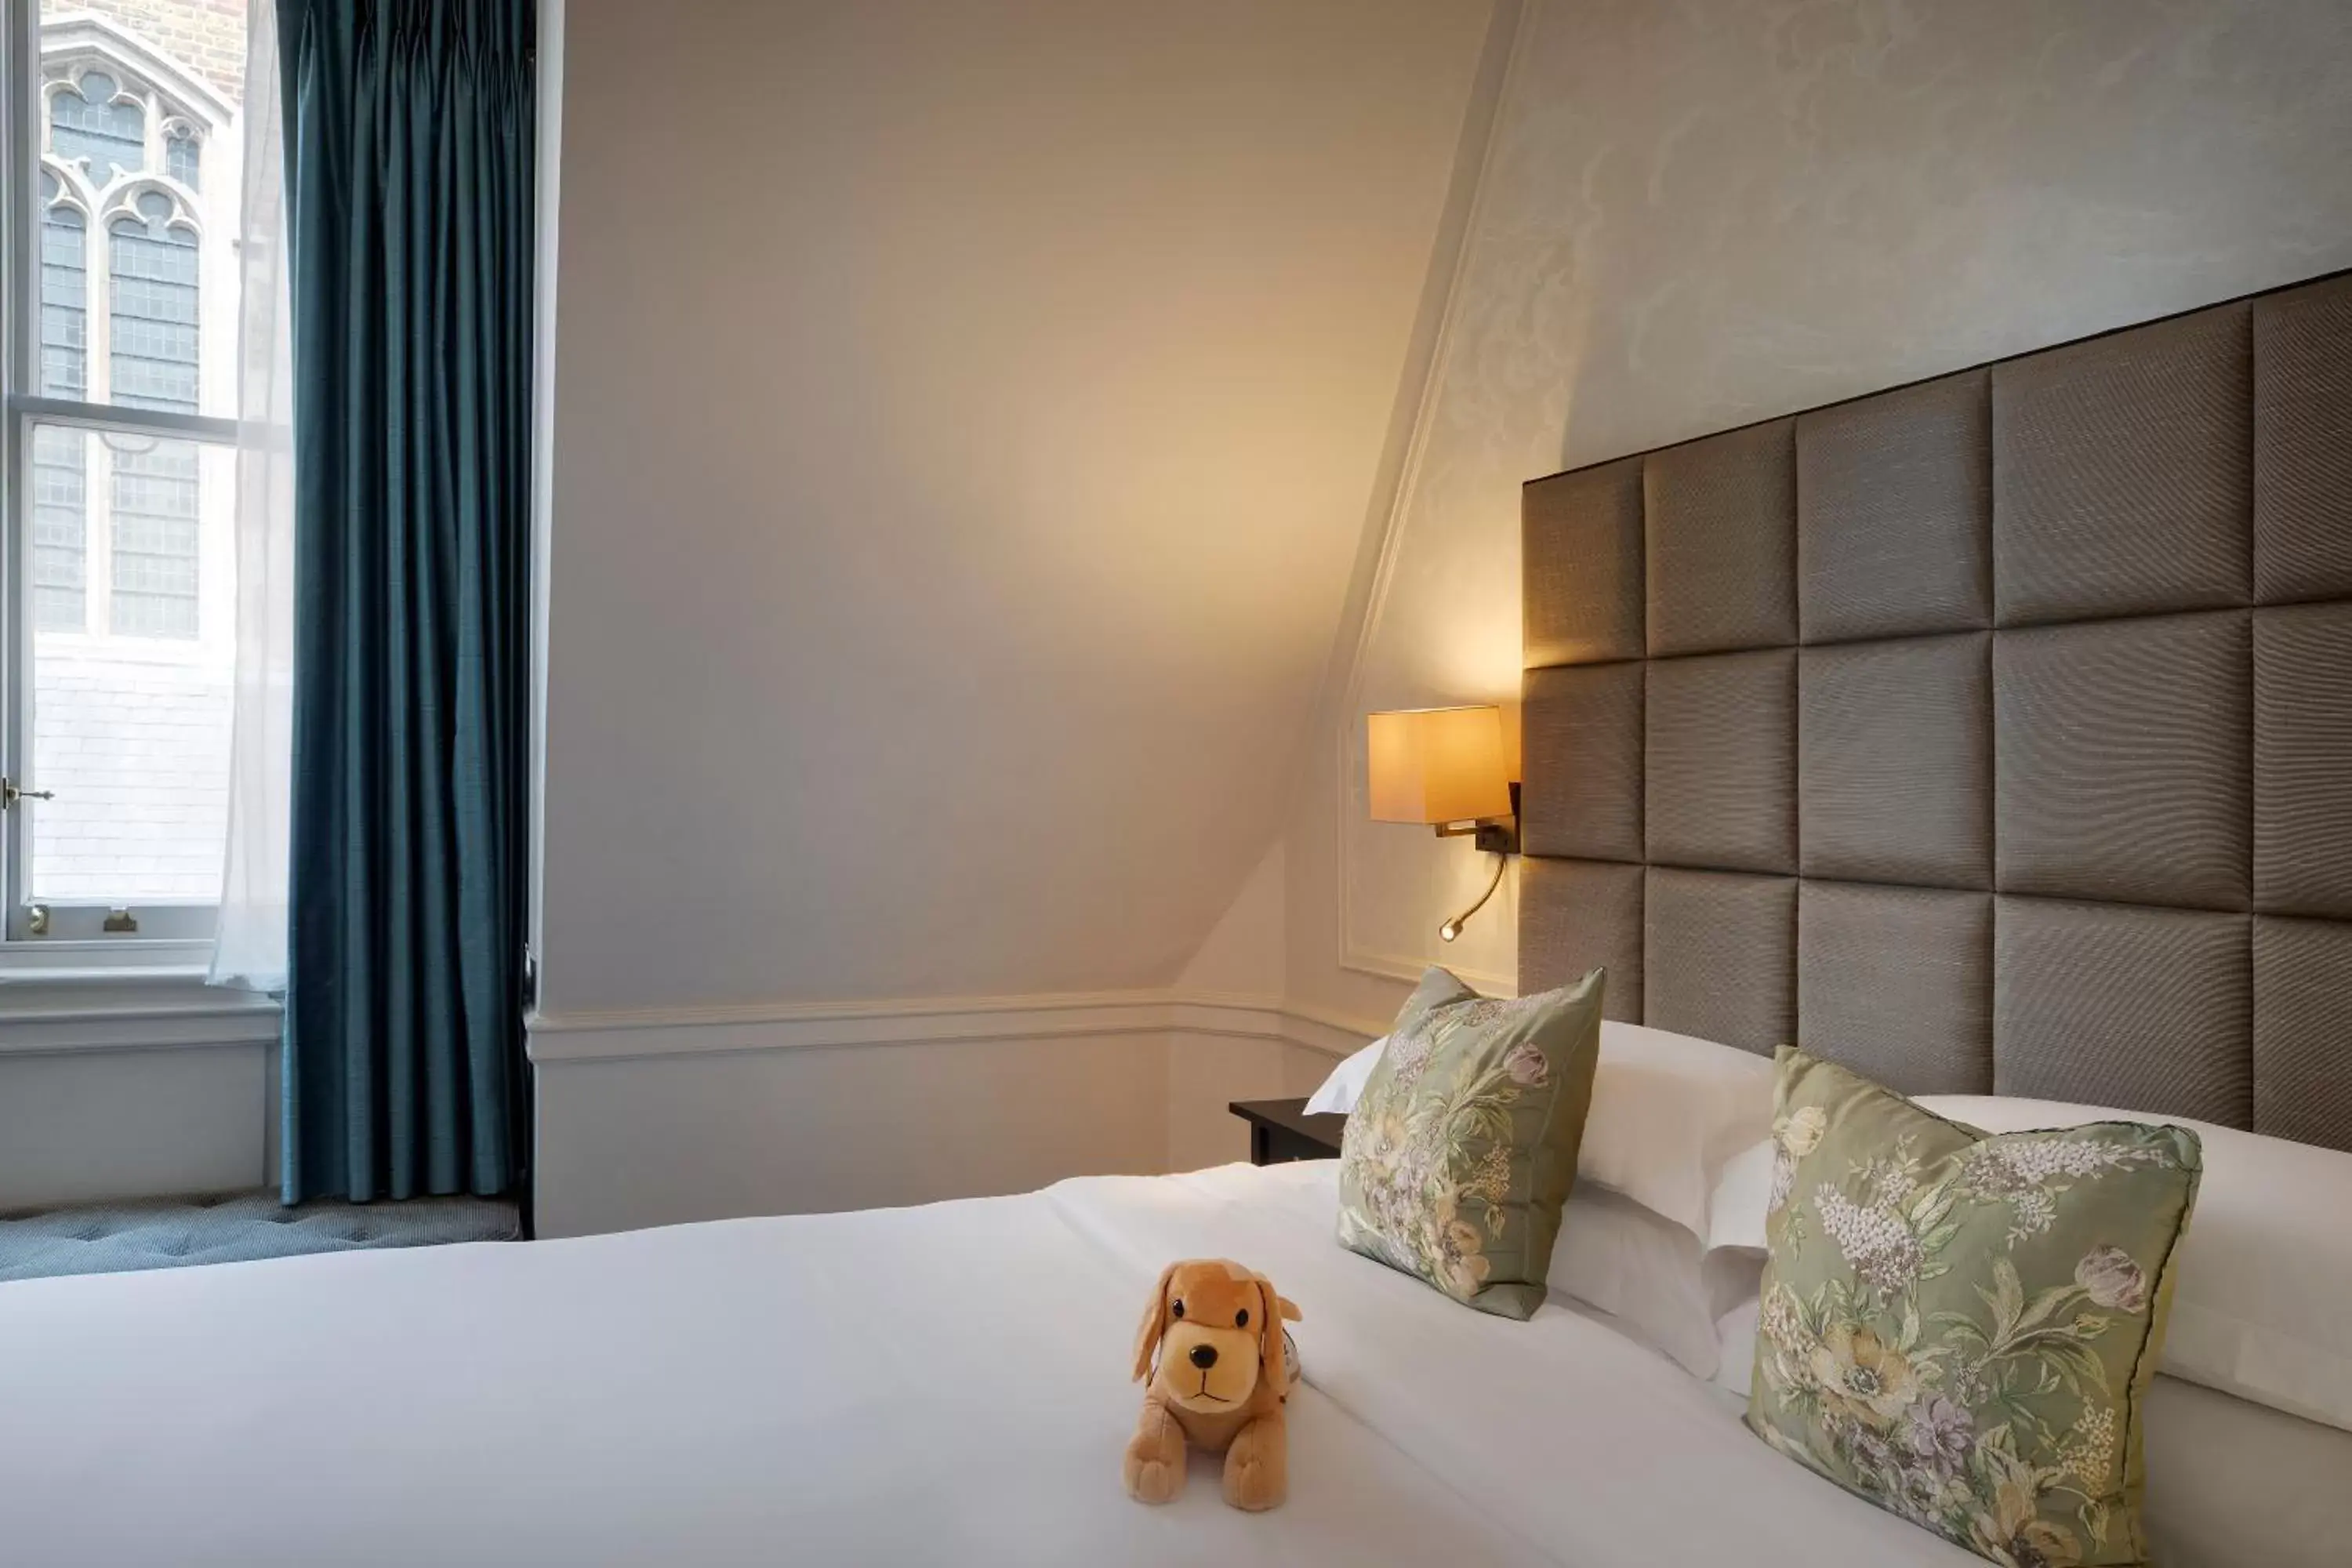 Bed in Sloane Square Hotel